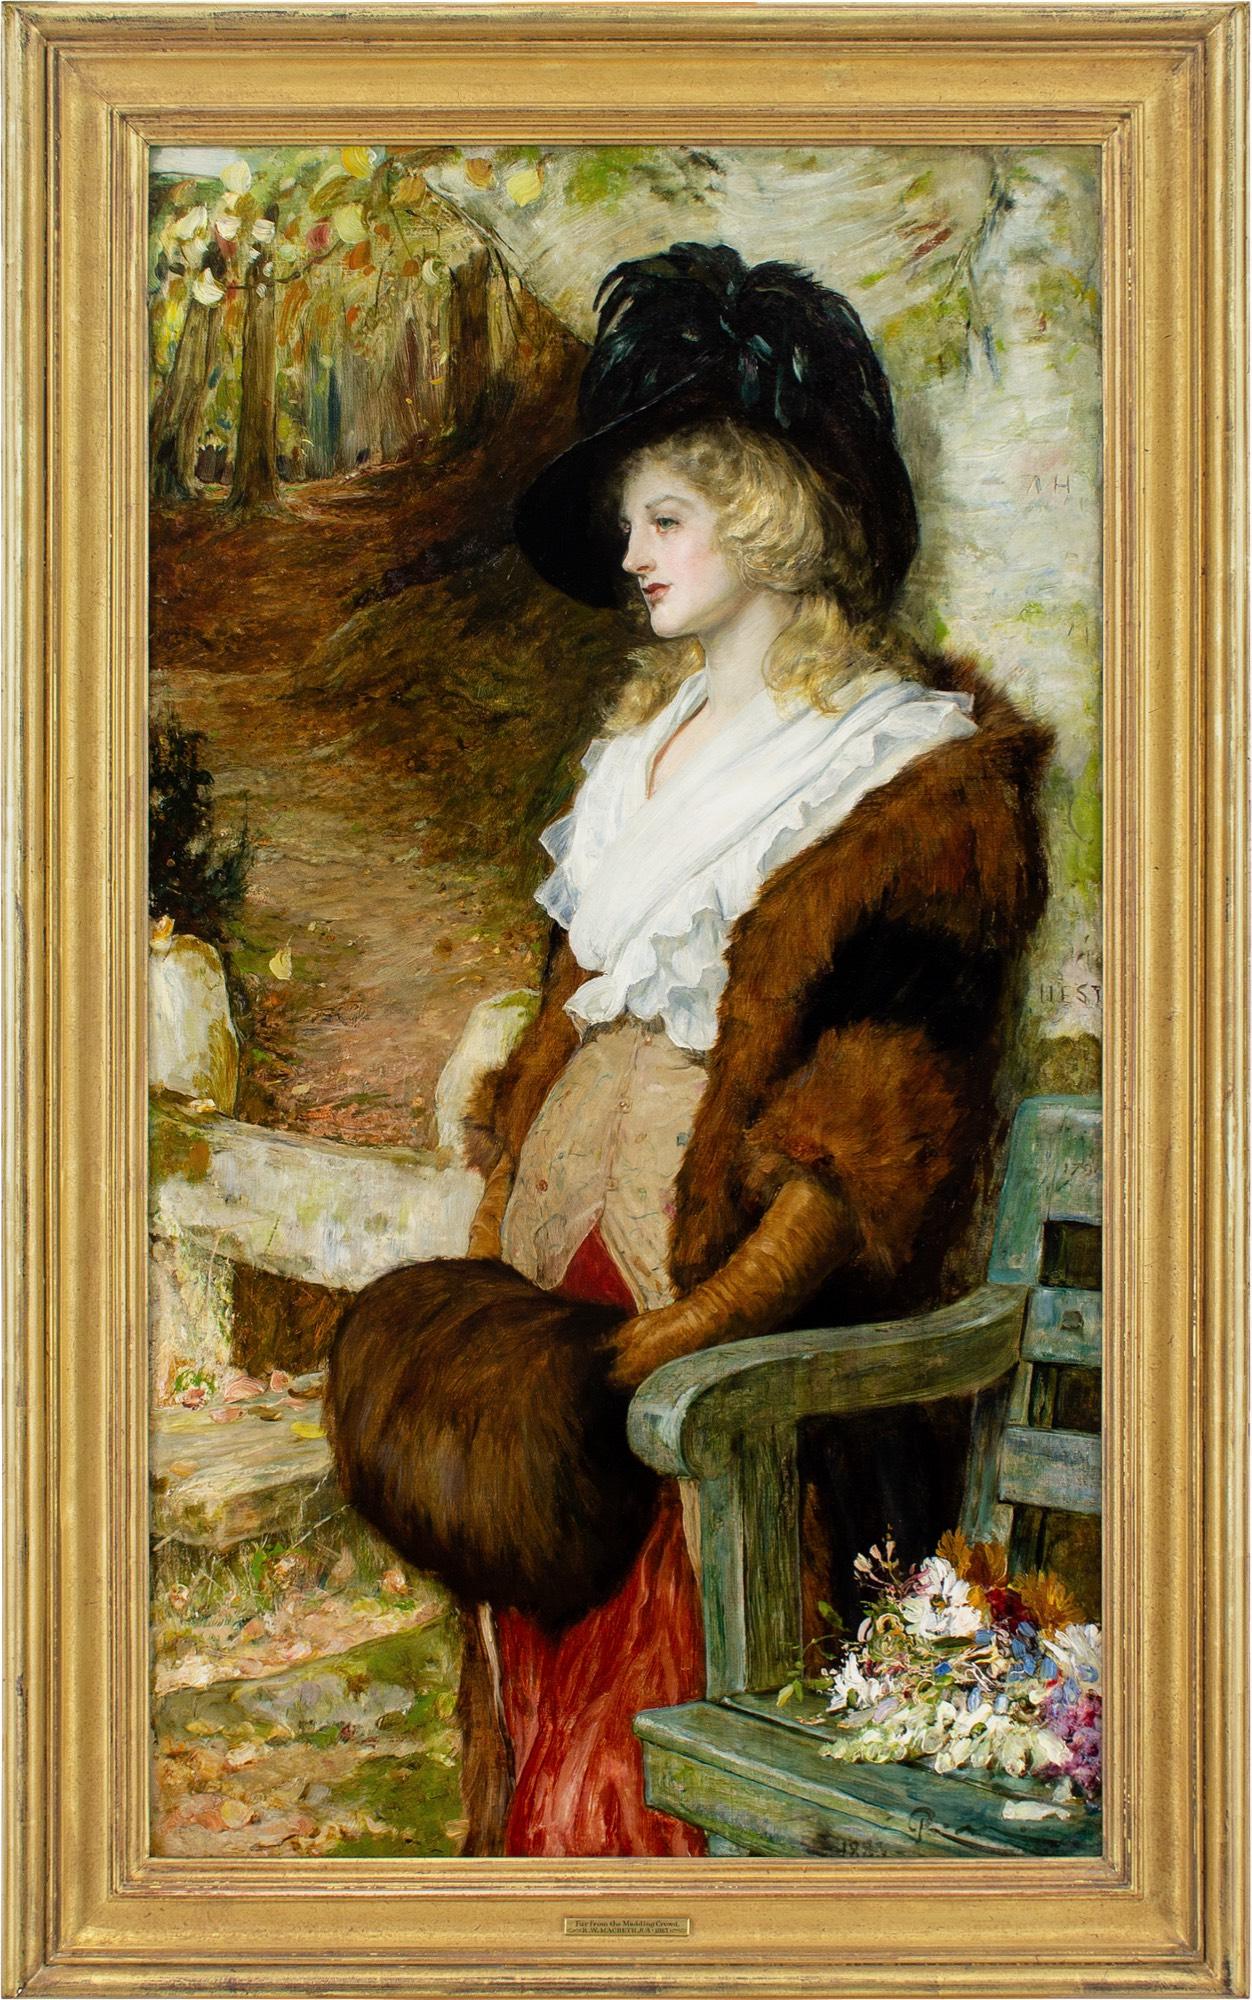 Cette envoûtante peinture à l'huile de la fin du XIXe siècle de l'artiste écossais Robert Walker Macbeth RAI RWS (1848-1910) représente une jeune femme portant une pelerine blanche et une veste garnie de fourrure, adossée à un arbre à l'entrée d'un